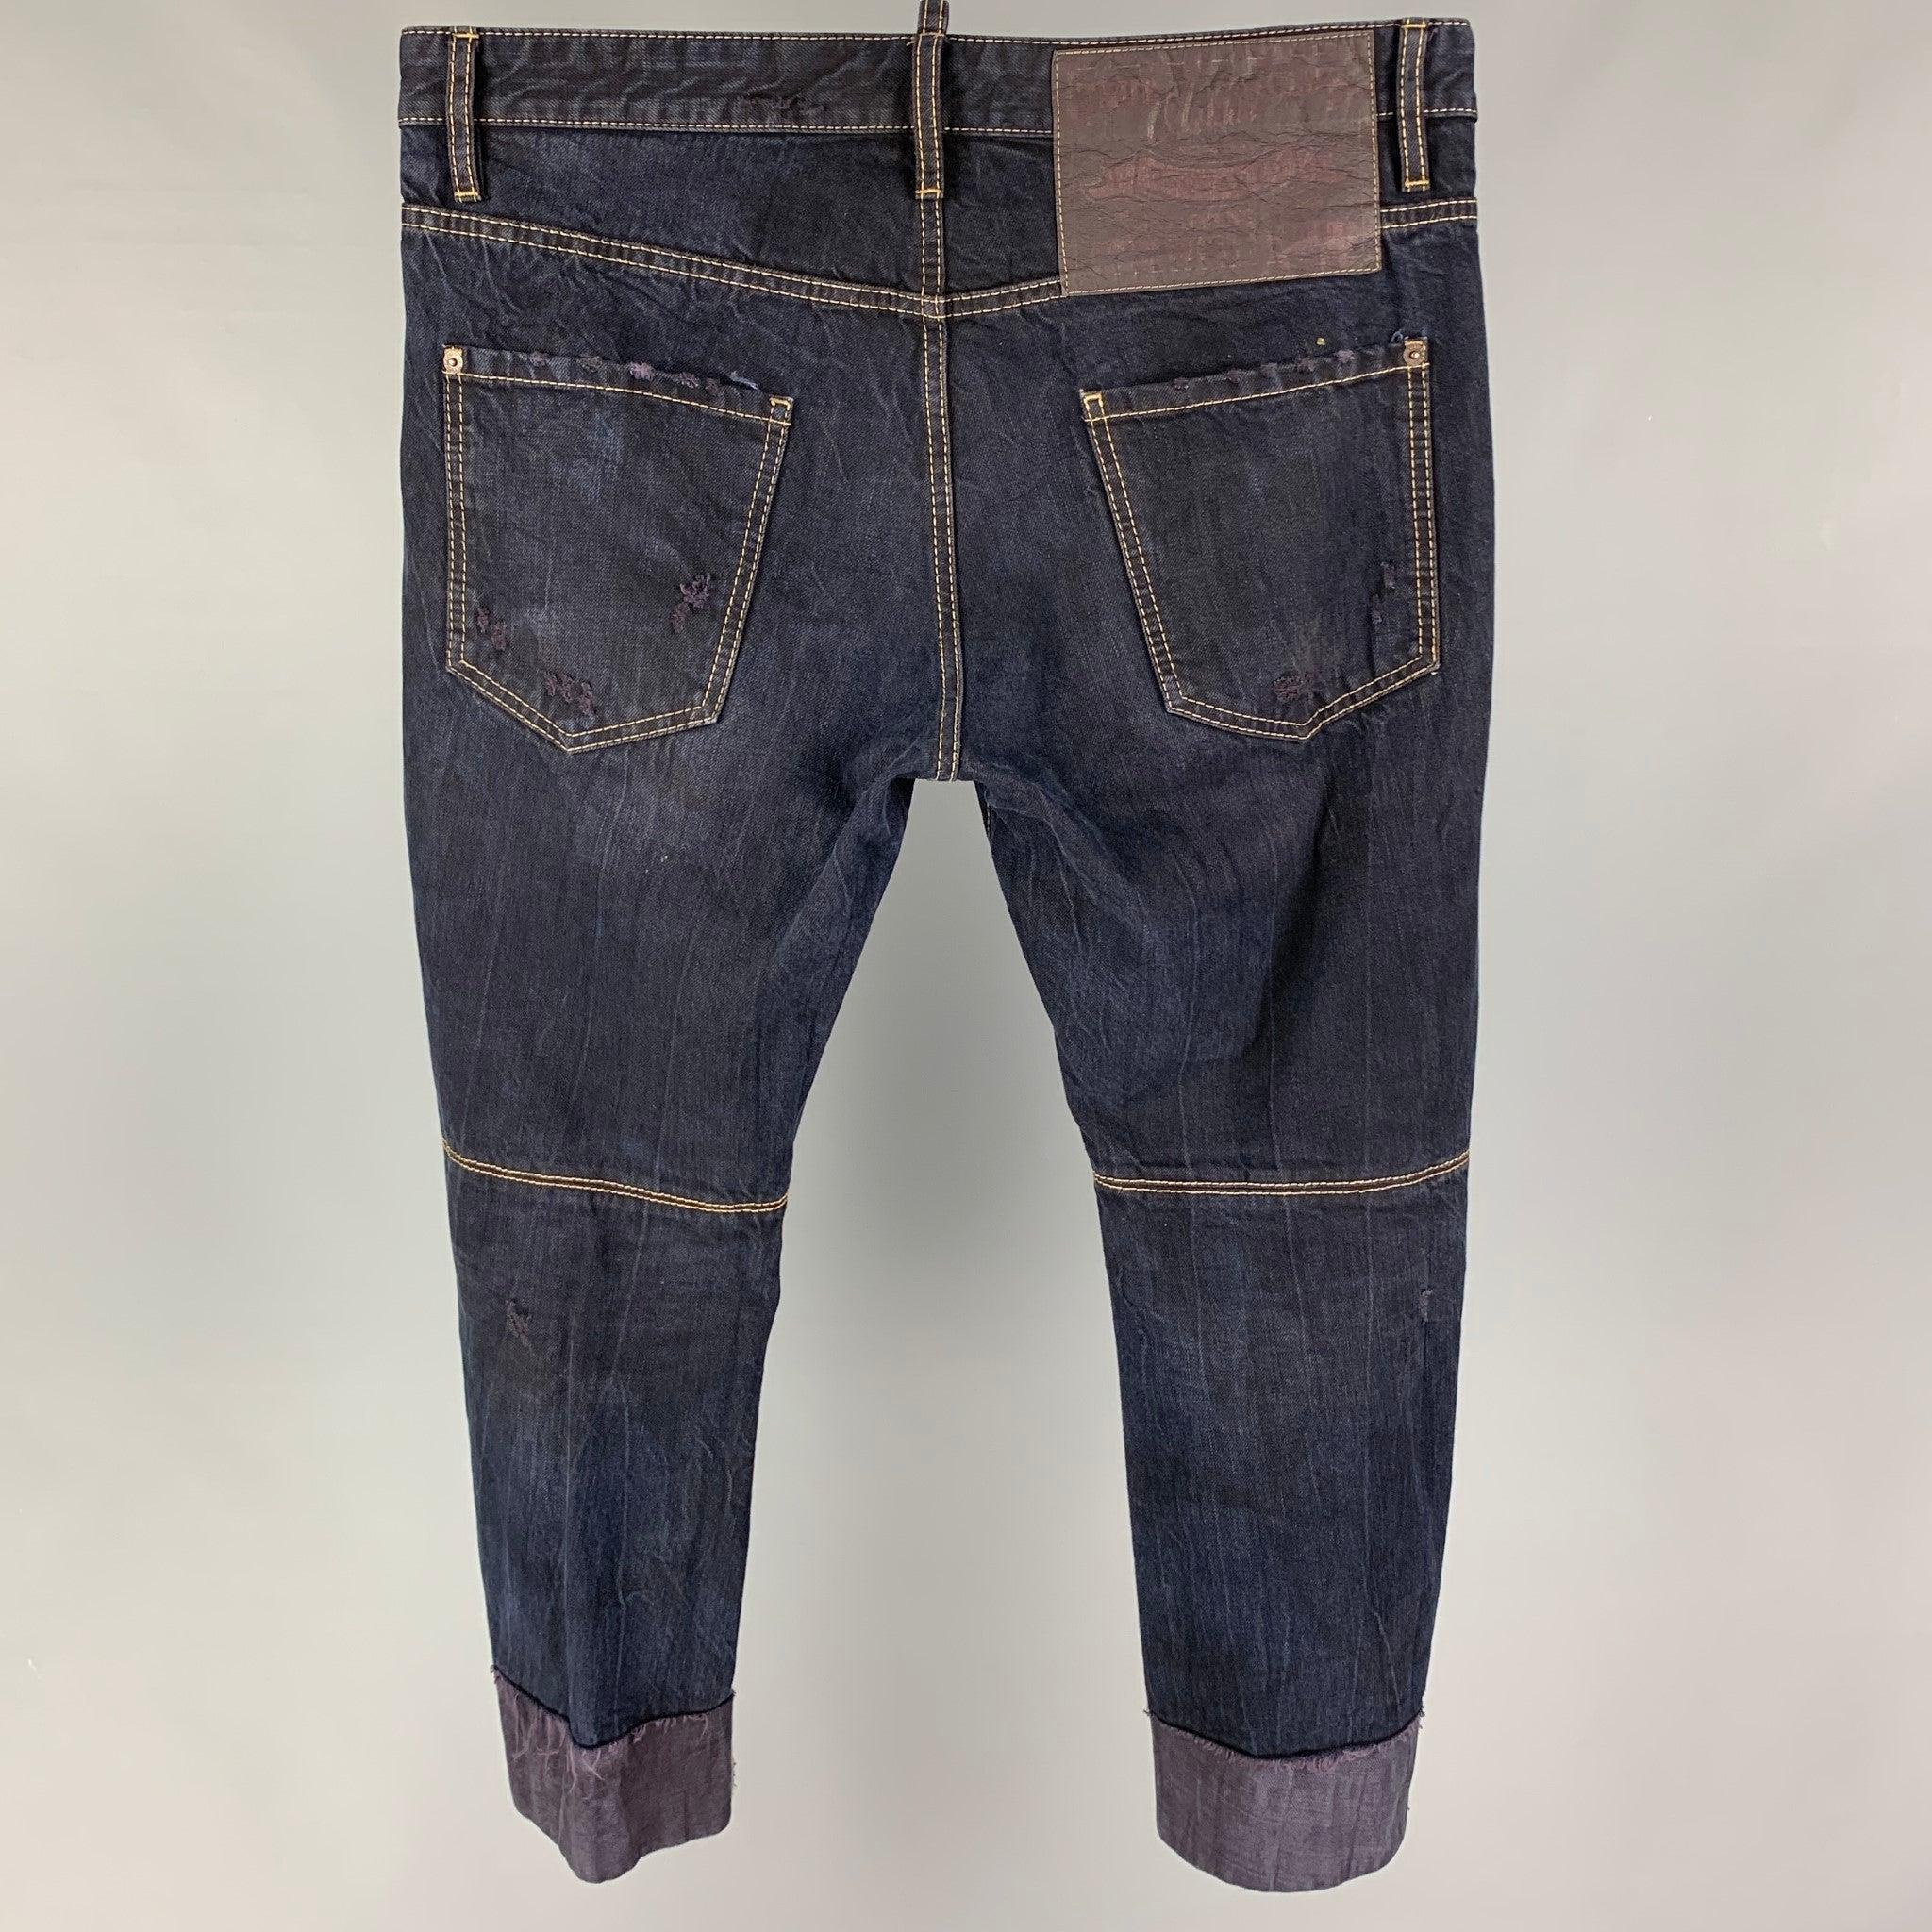 Die DSQUARED2 Jeans aus dunkelblauer Distressed-Baumwolle hat einen verkürzten Schnitt, Kontrastnähte und einen Knopfverschluss. Hergestellt in Italien.
Gut
Gebrauchtes Zustand. 

Markiert:   50 

Abmessungen: 
  Taille: 36 Zoll  Steigung: 11 Zoll 